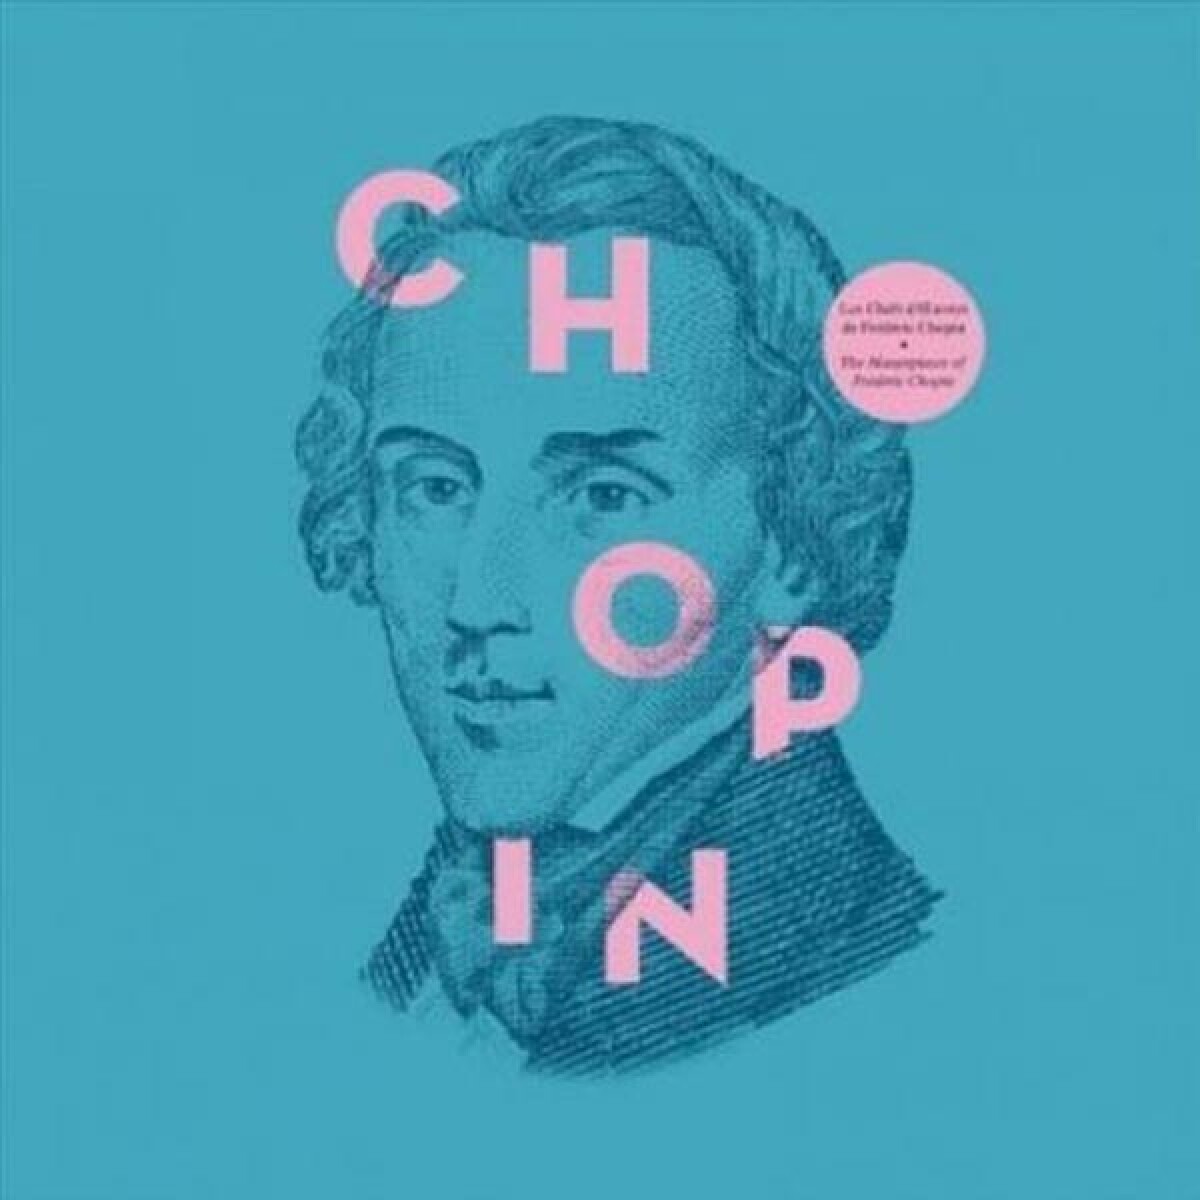 (l) Frederic Chopin - Frederic Chopin - Vinilo 